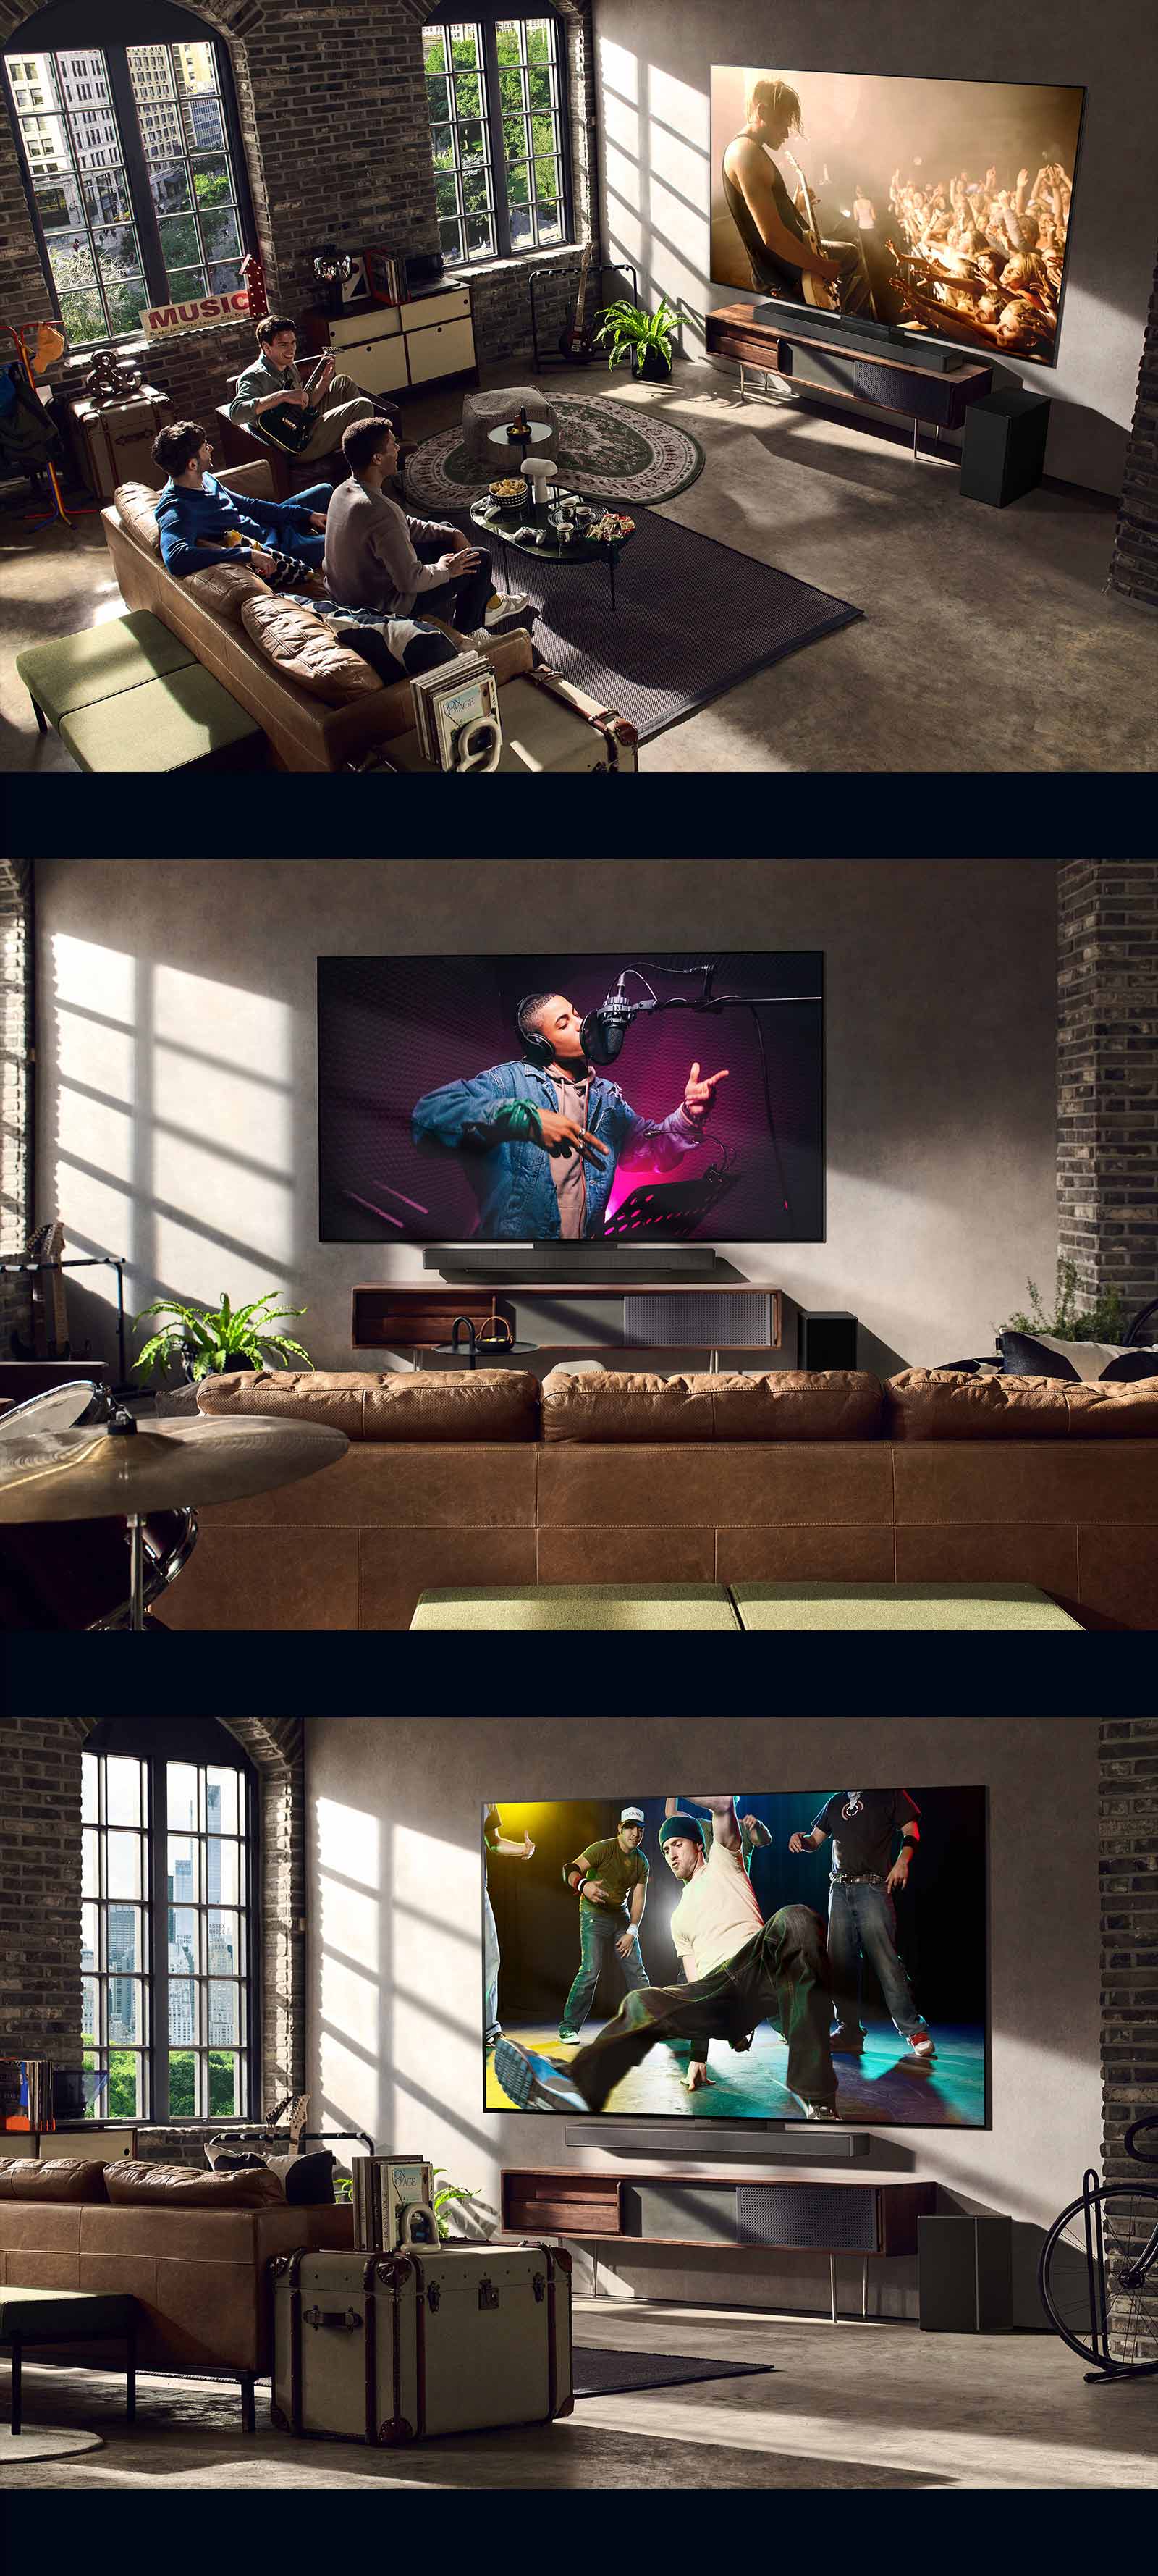 Kolme elämäntapakuvaa. Ylhäältä alas: kolme miestä nauttivat konserttivideosta olohuoneessa. Yhdellä seinällä on LG TV, joka näyttää musiikin tallennuskohtausta, toisella seinällä LG TV, joka näyttää viistosti breakdance-kohtauksen.